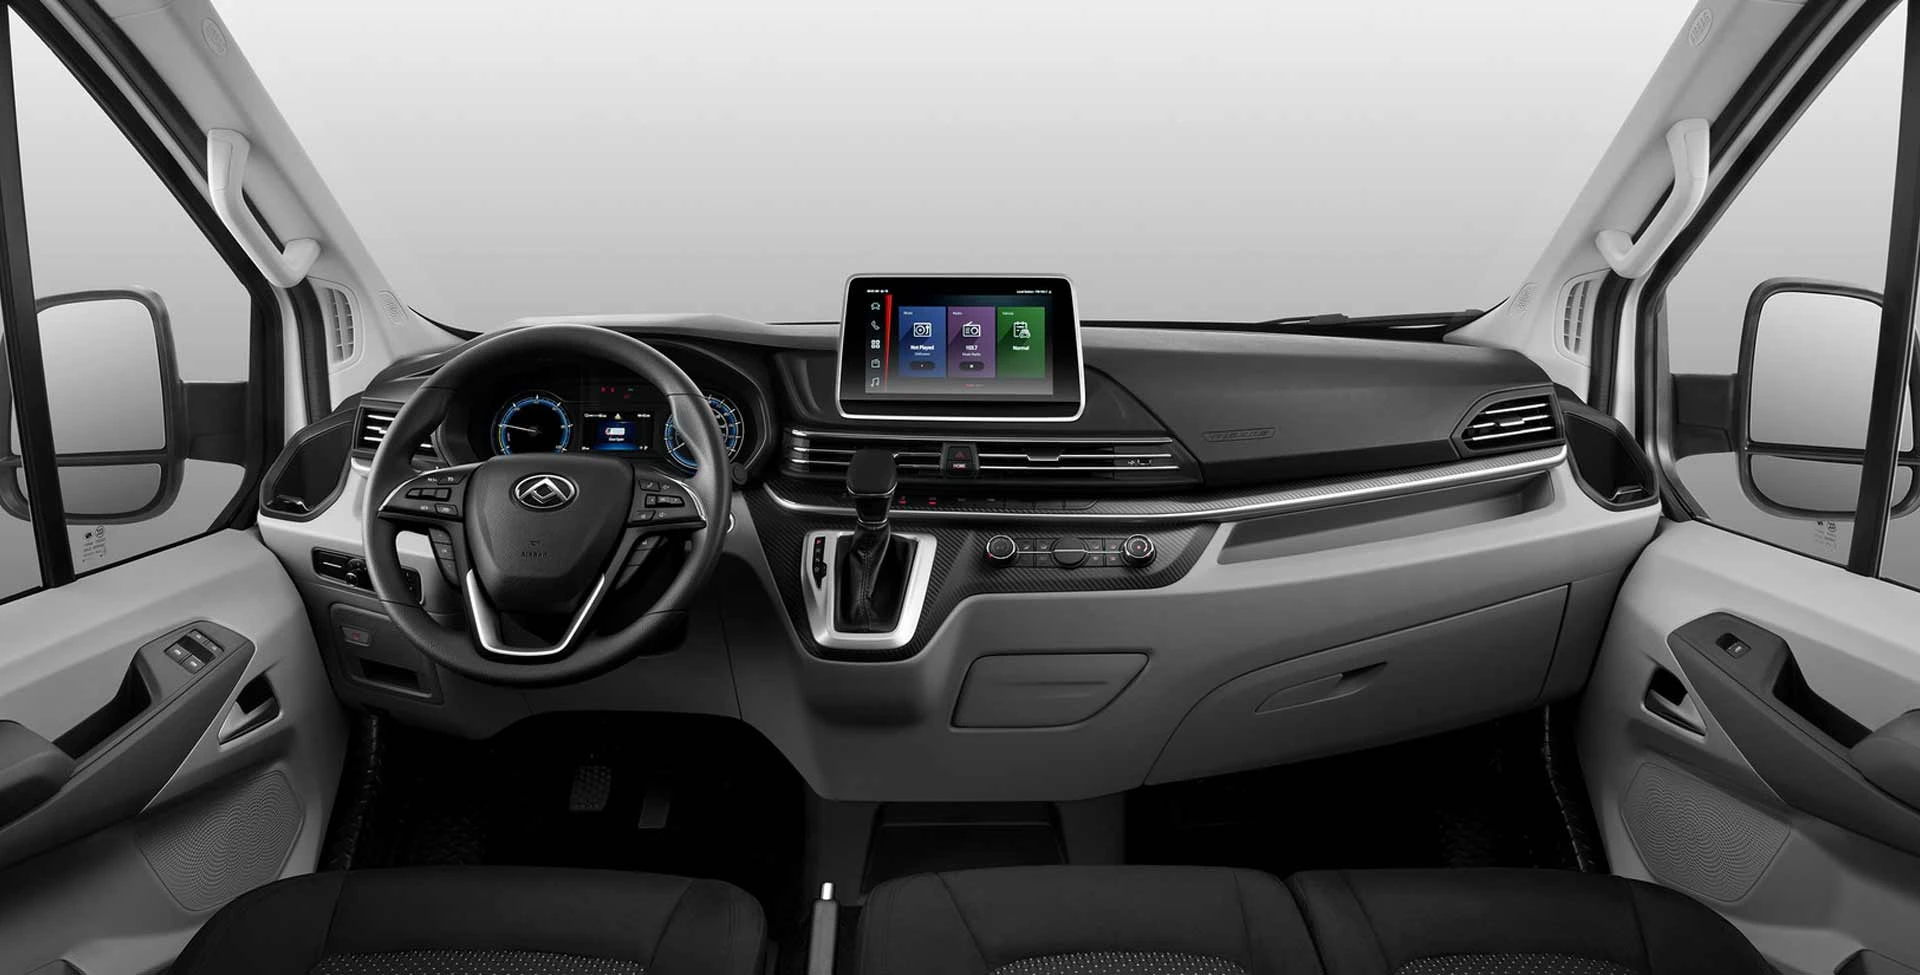 Diseño Interior con tecnología inteligente para el manejo perfecto con el minibus Maxus V90 cargo